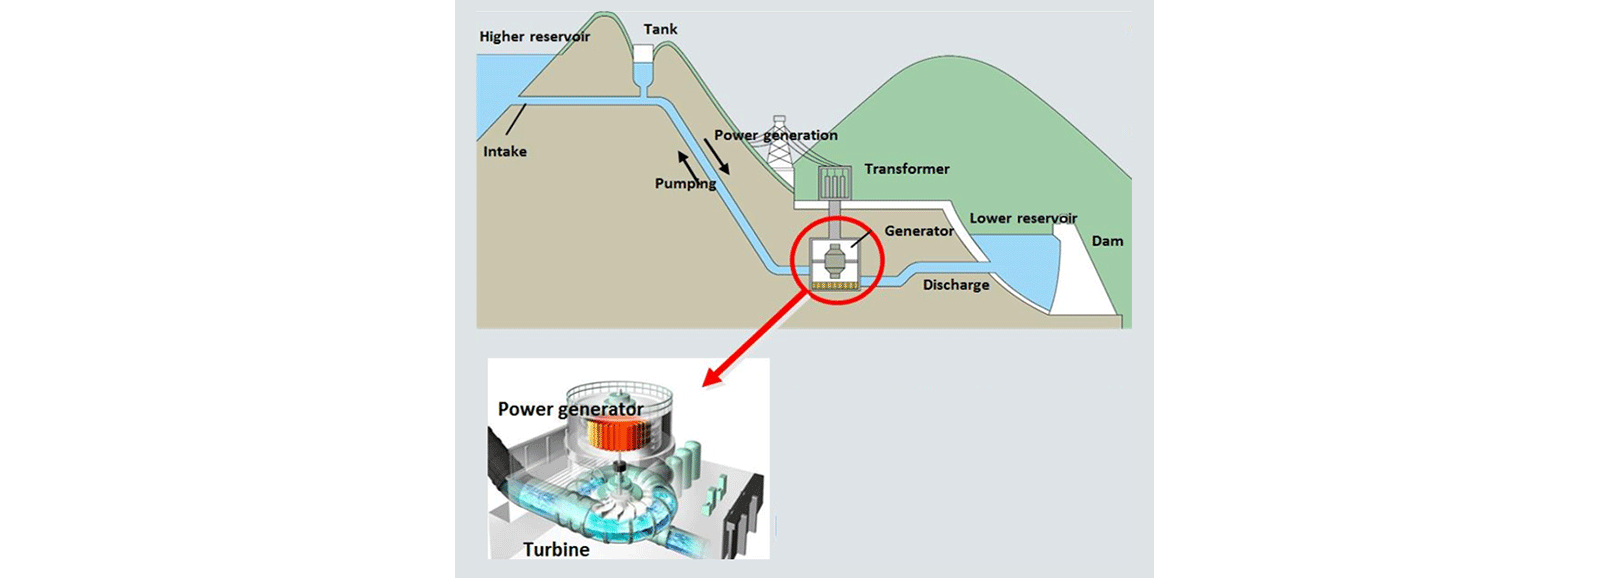 Central hidroelétrica: produção de energia por bombagem